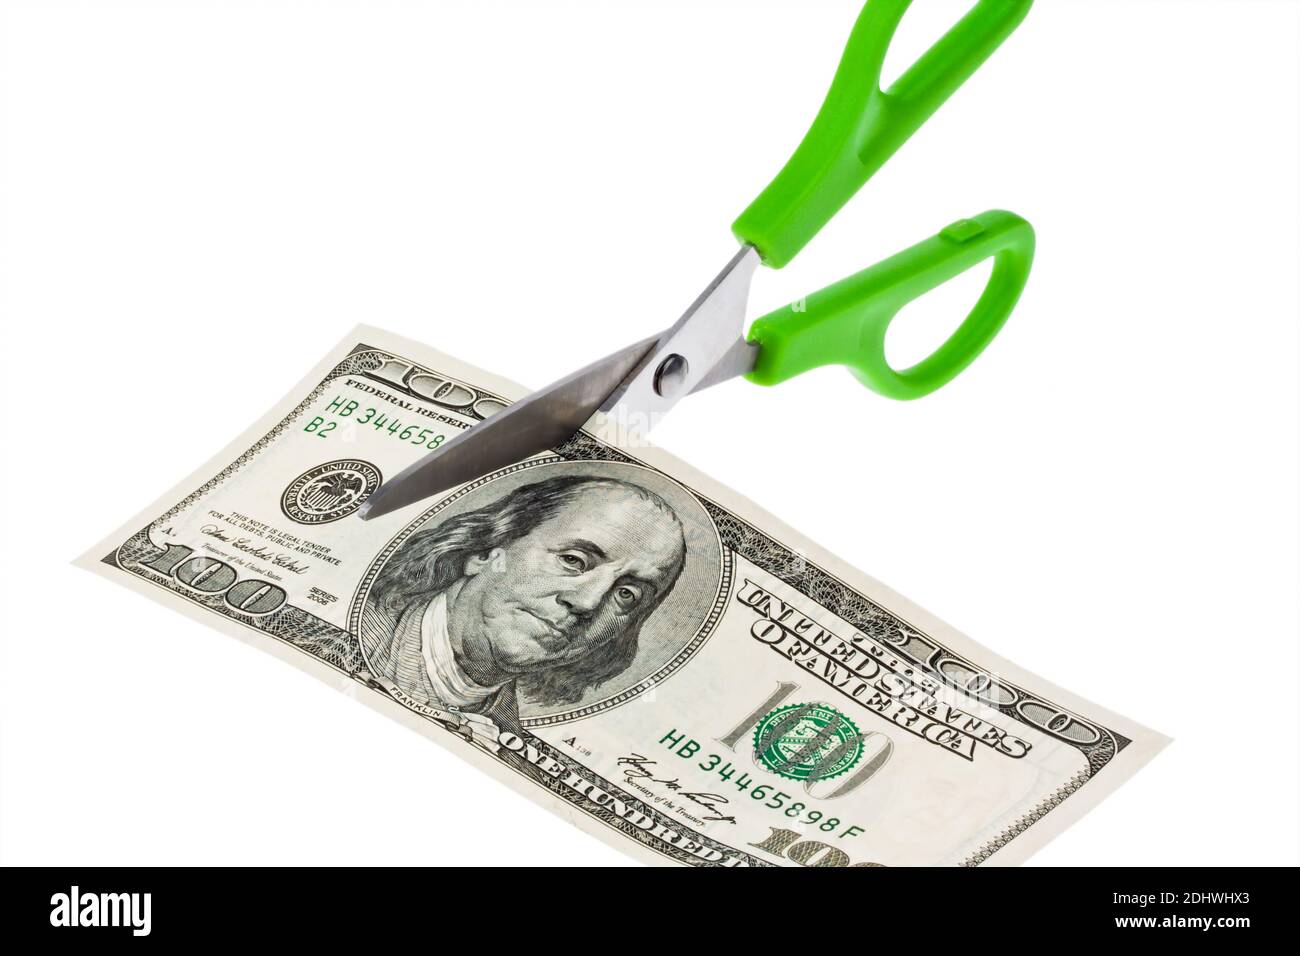 Eine Schere zerschneidet eine 100 US-Dollar Banknote Stock Photo